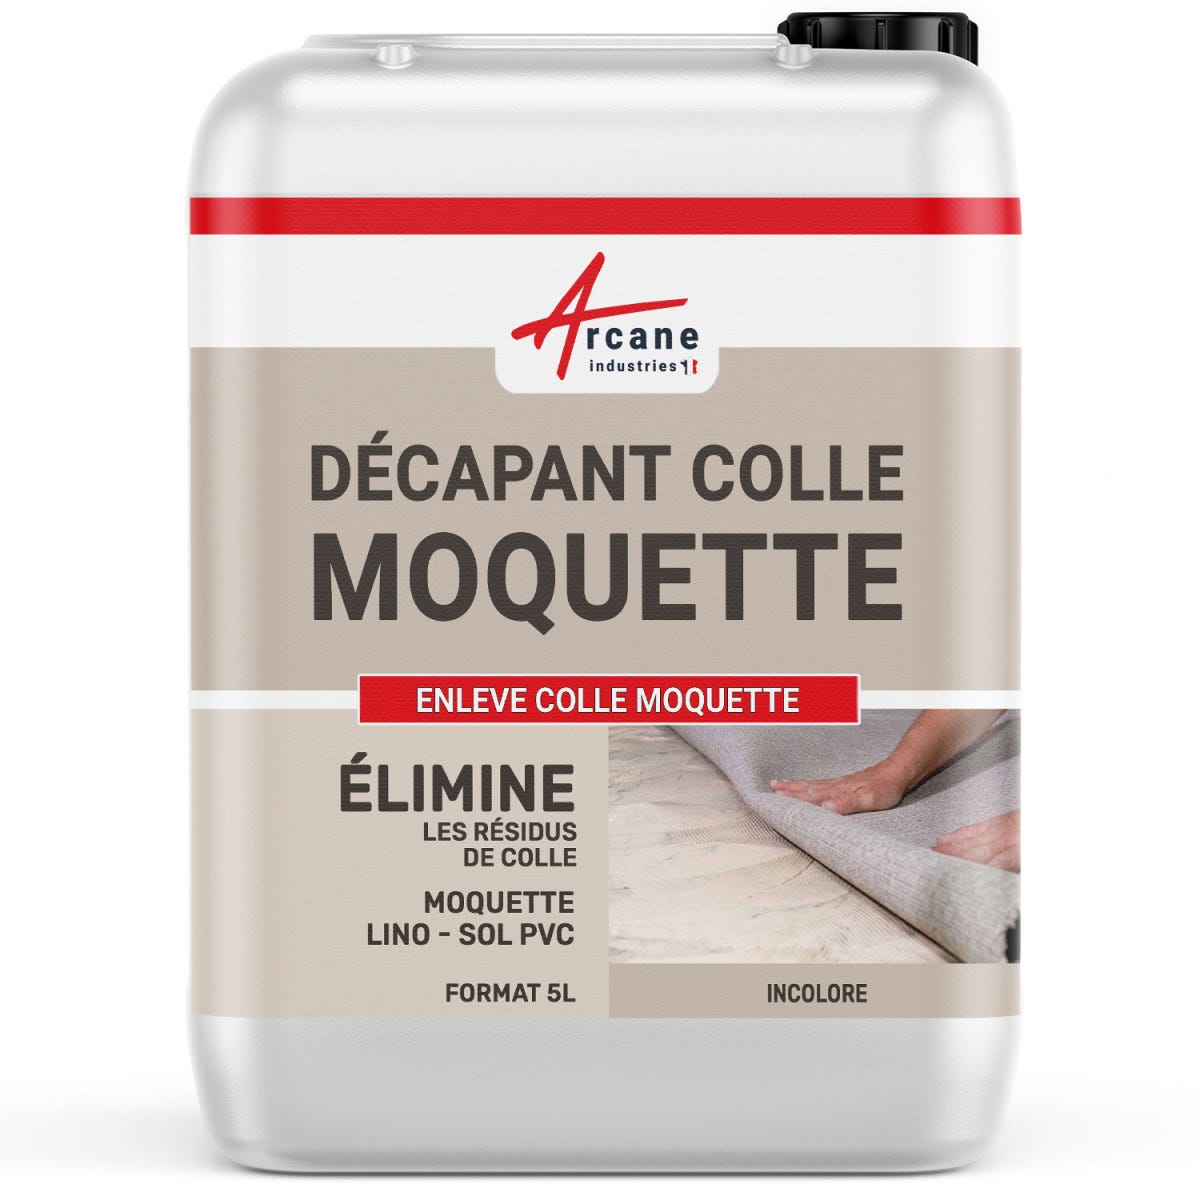 ENLEVE COLLE MOQUETTE - 5 L - Gel - ARCANE INDUSTRIES 2